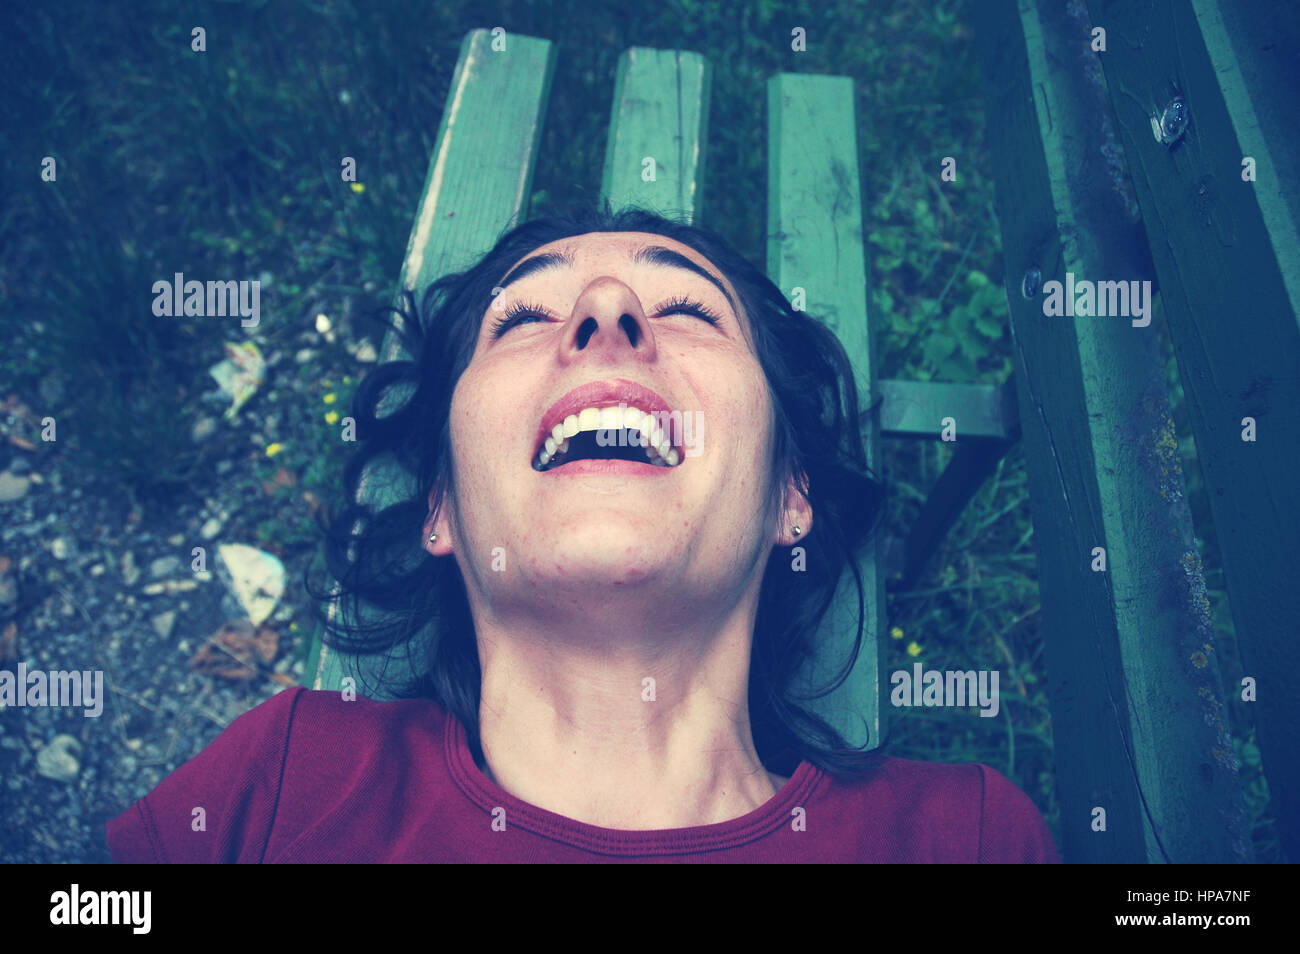 Kitzeln, kitzelte Frau lachend auf einer Bank. Getönten Bild Stockfoto